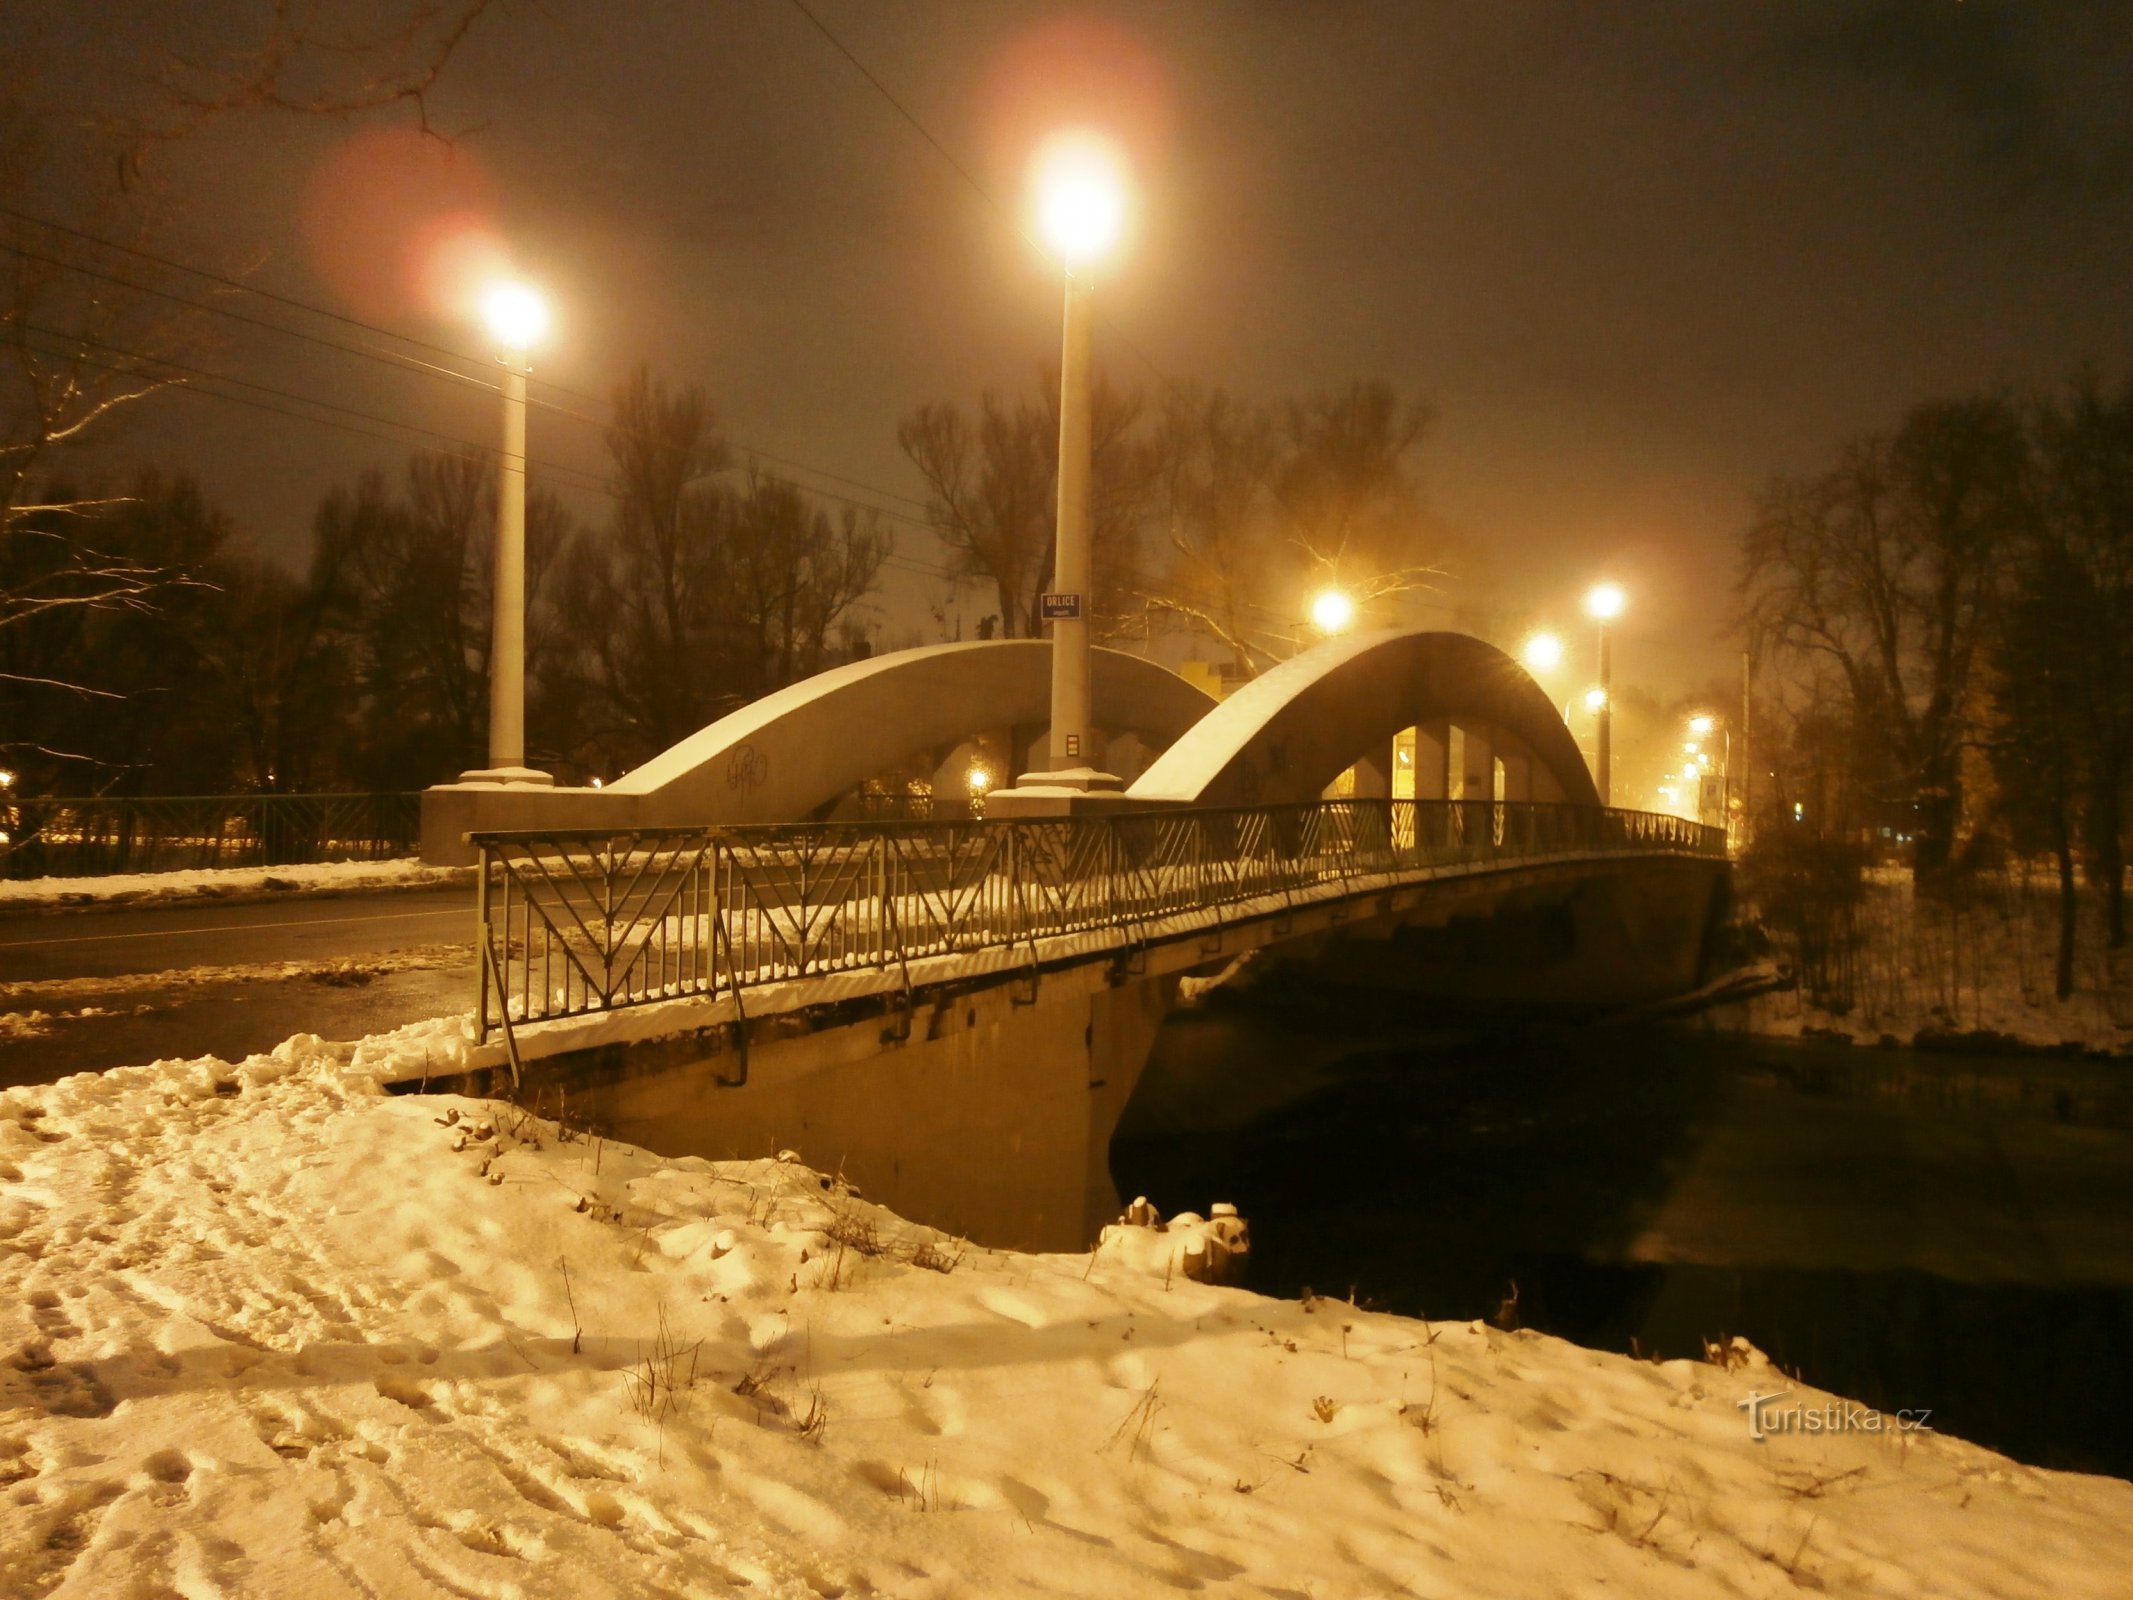 Malšovick Bridge (Hradec Králové)